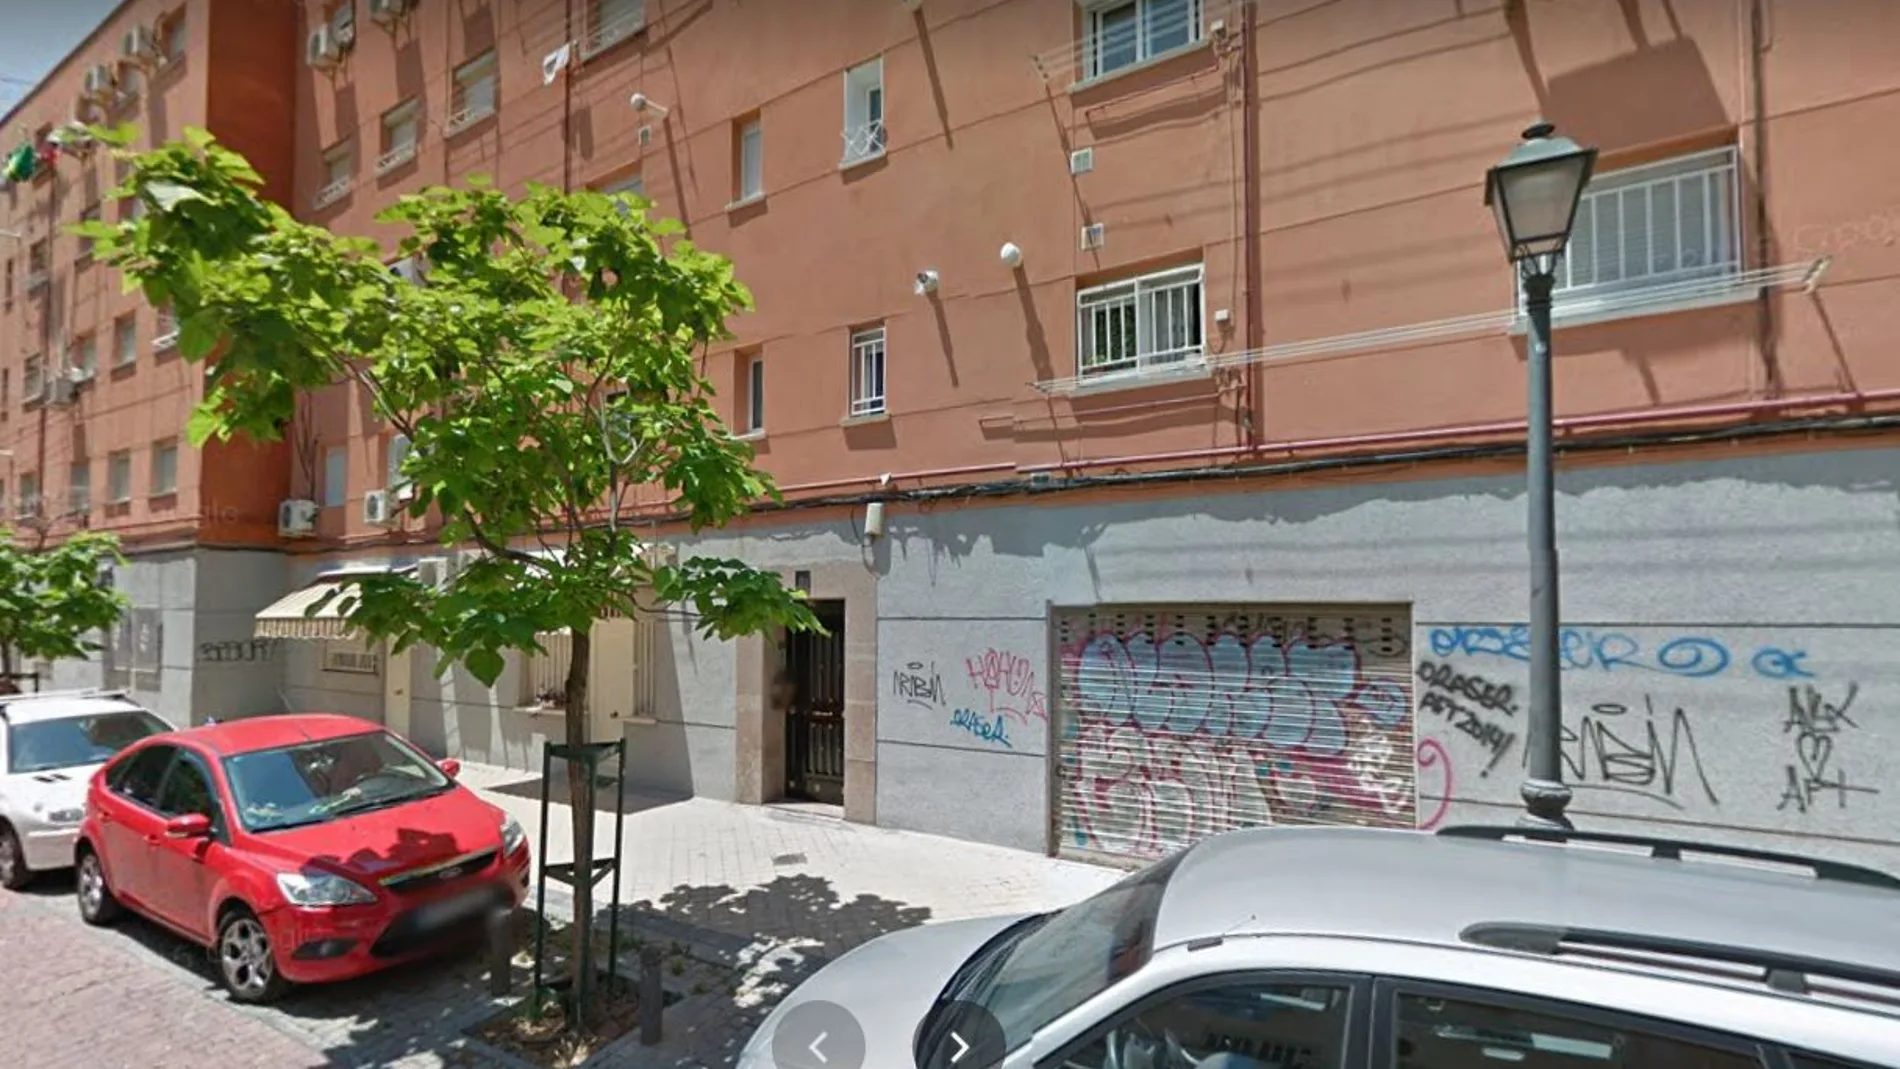 Los hechos sucedieron en el número 4 de la calle Benadalid de Madrid, en Vallecas